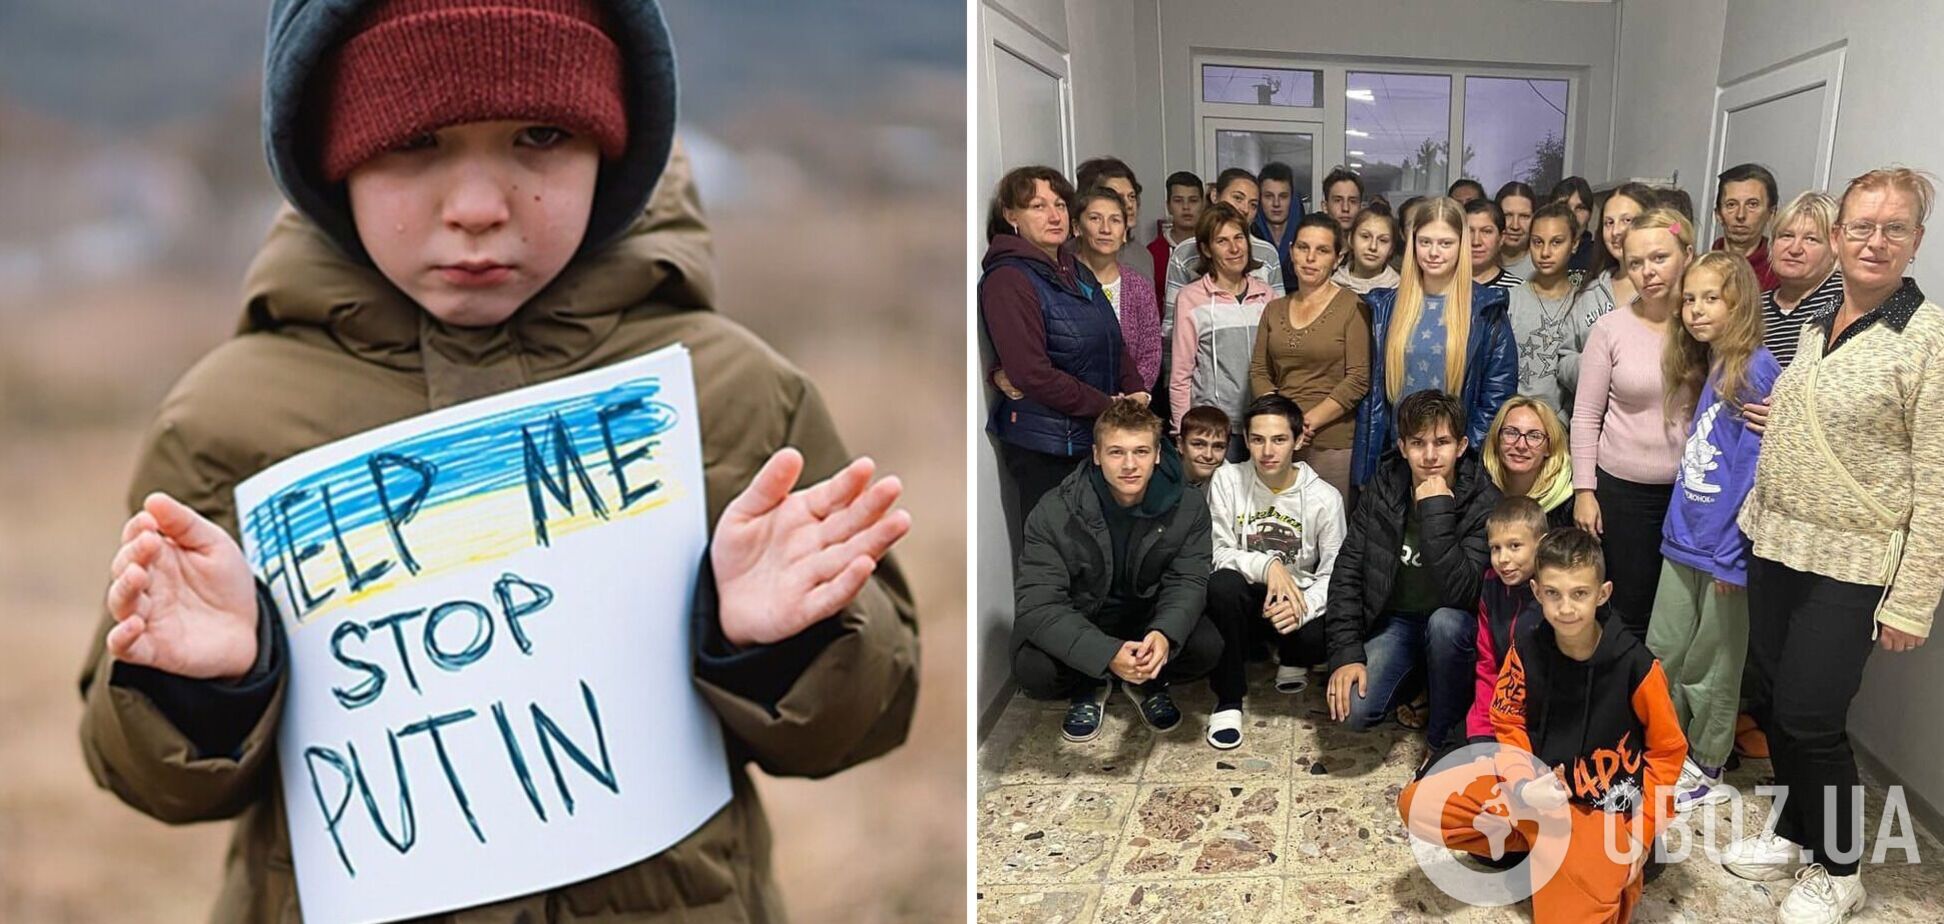 'Процесс был тяжелым': в Украину вернули 37 депортированных оккупантами детей. Фото